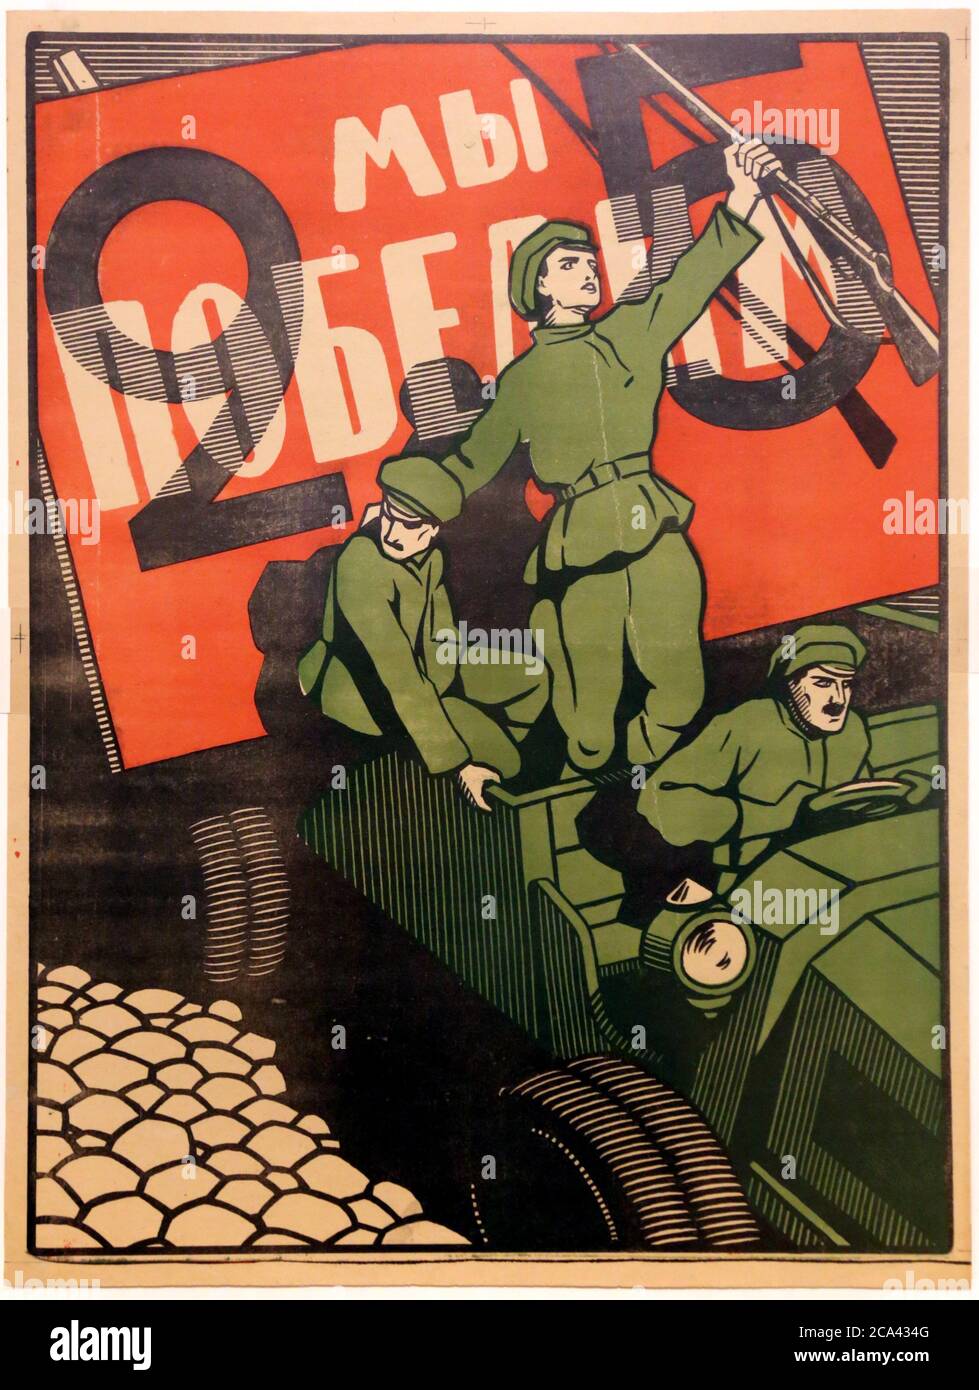 Das polnisch-sowjetische Kriegspropaganda-Plakat von 1920. Sowjetisches Plakat "Wir werden gewinnen!" Künstler unbekannt. Stockfoto